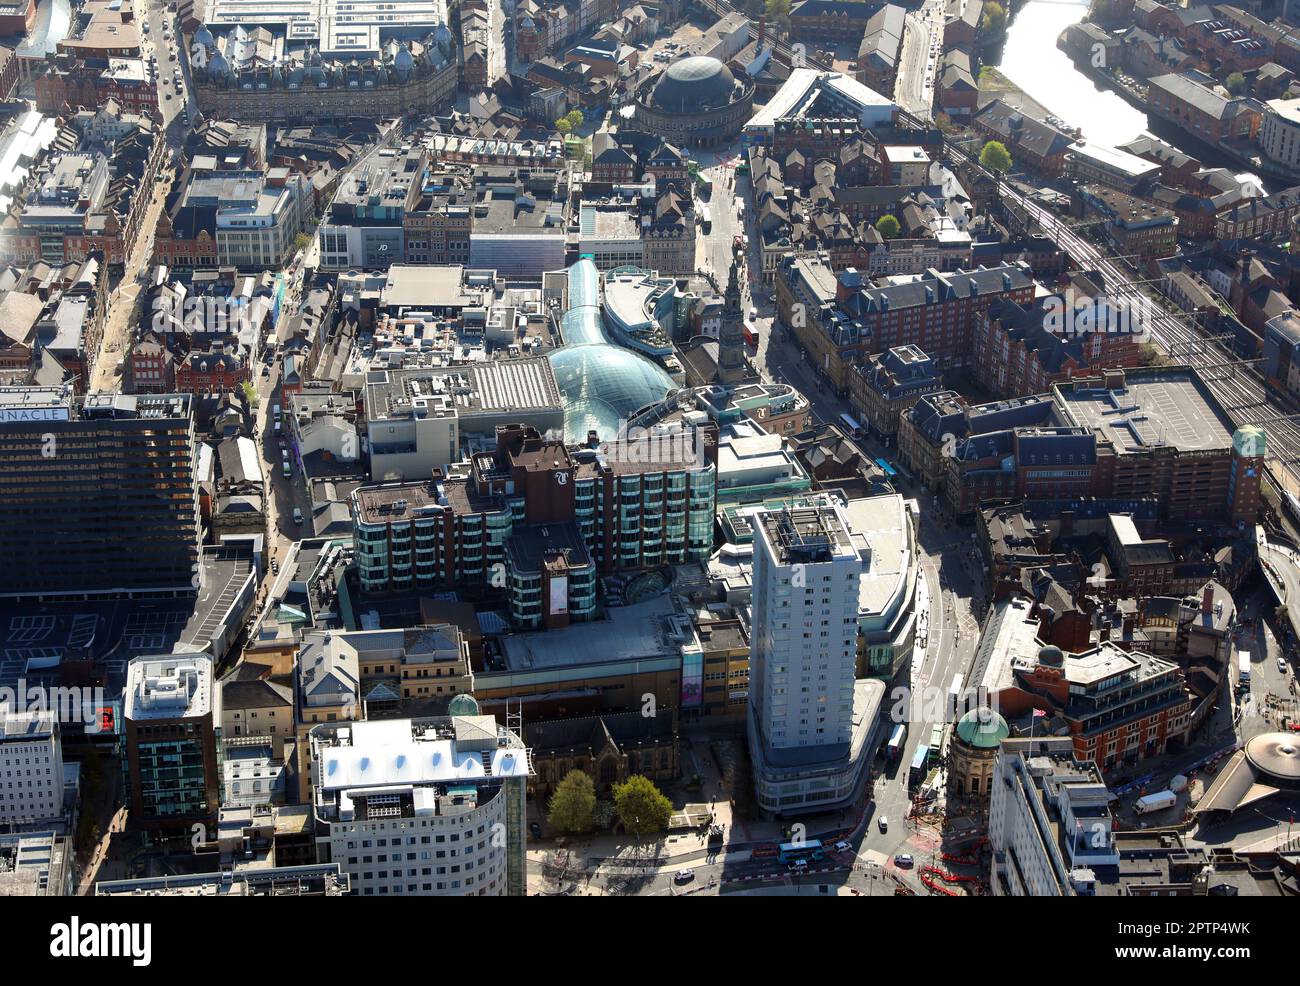 Vista aérea mirando hacia el este por Boar Lane del centro comercial Trinity Leeds Foto de stock